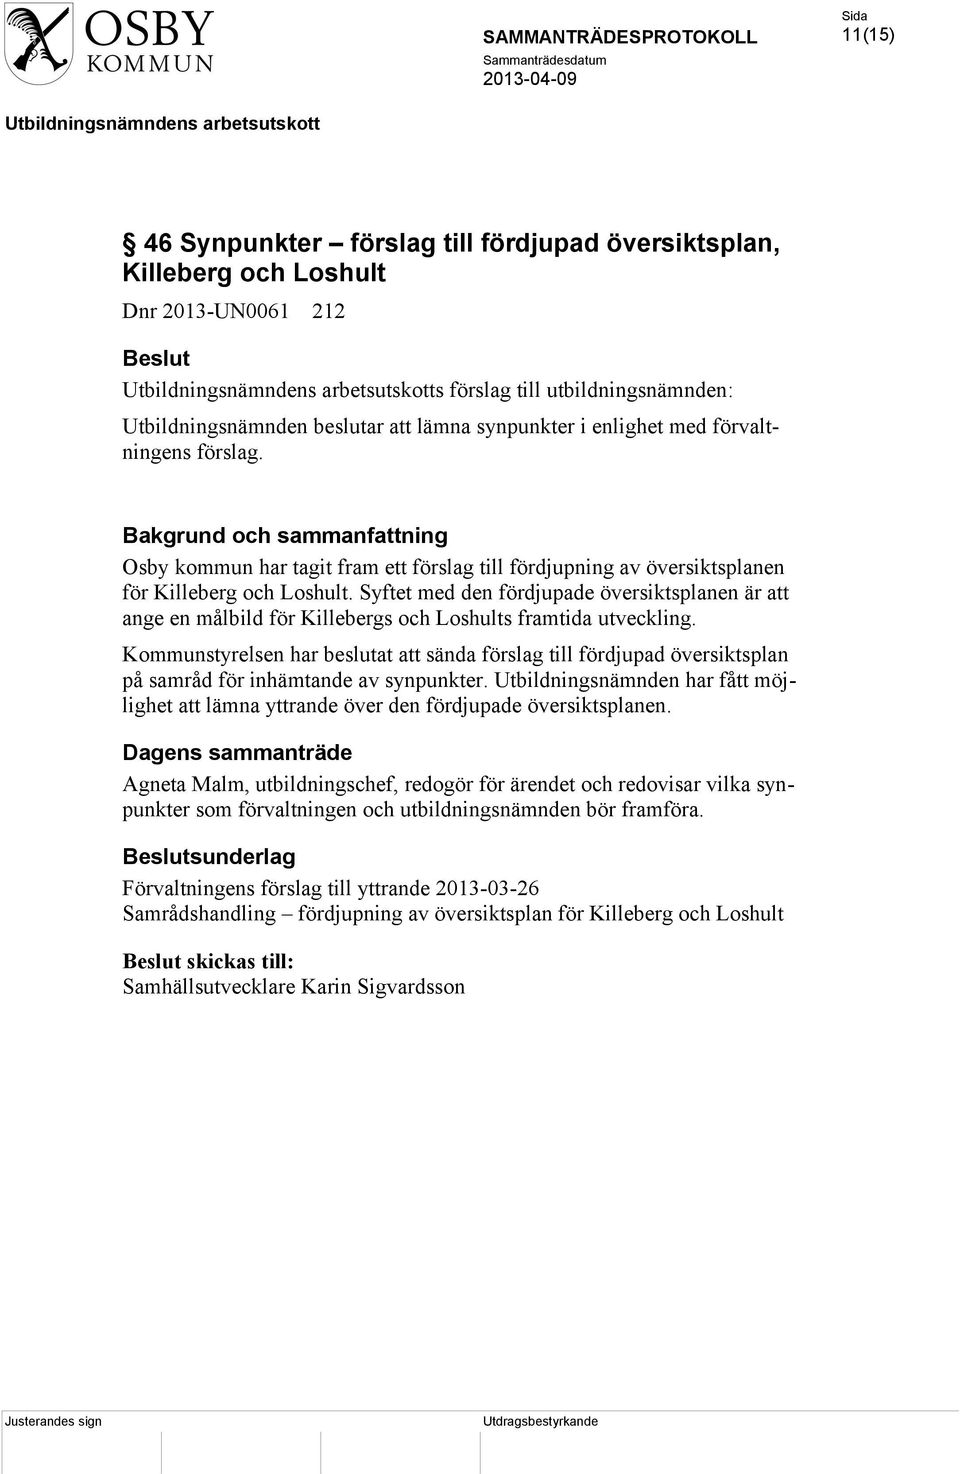 Syftet med den fördjupade översiktsplanen är att ange en målbild för Killebergs och Loshults framtida utveckling.